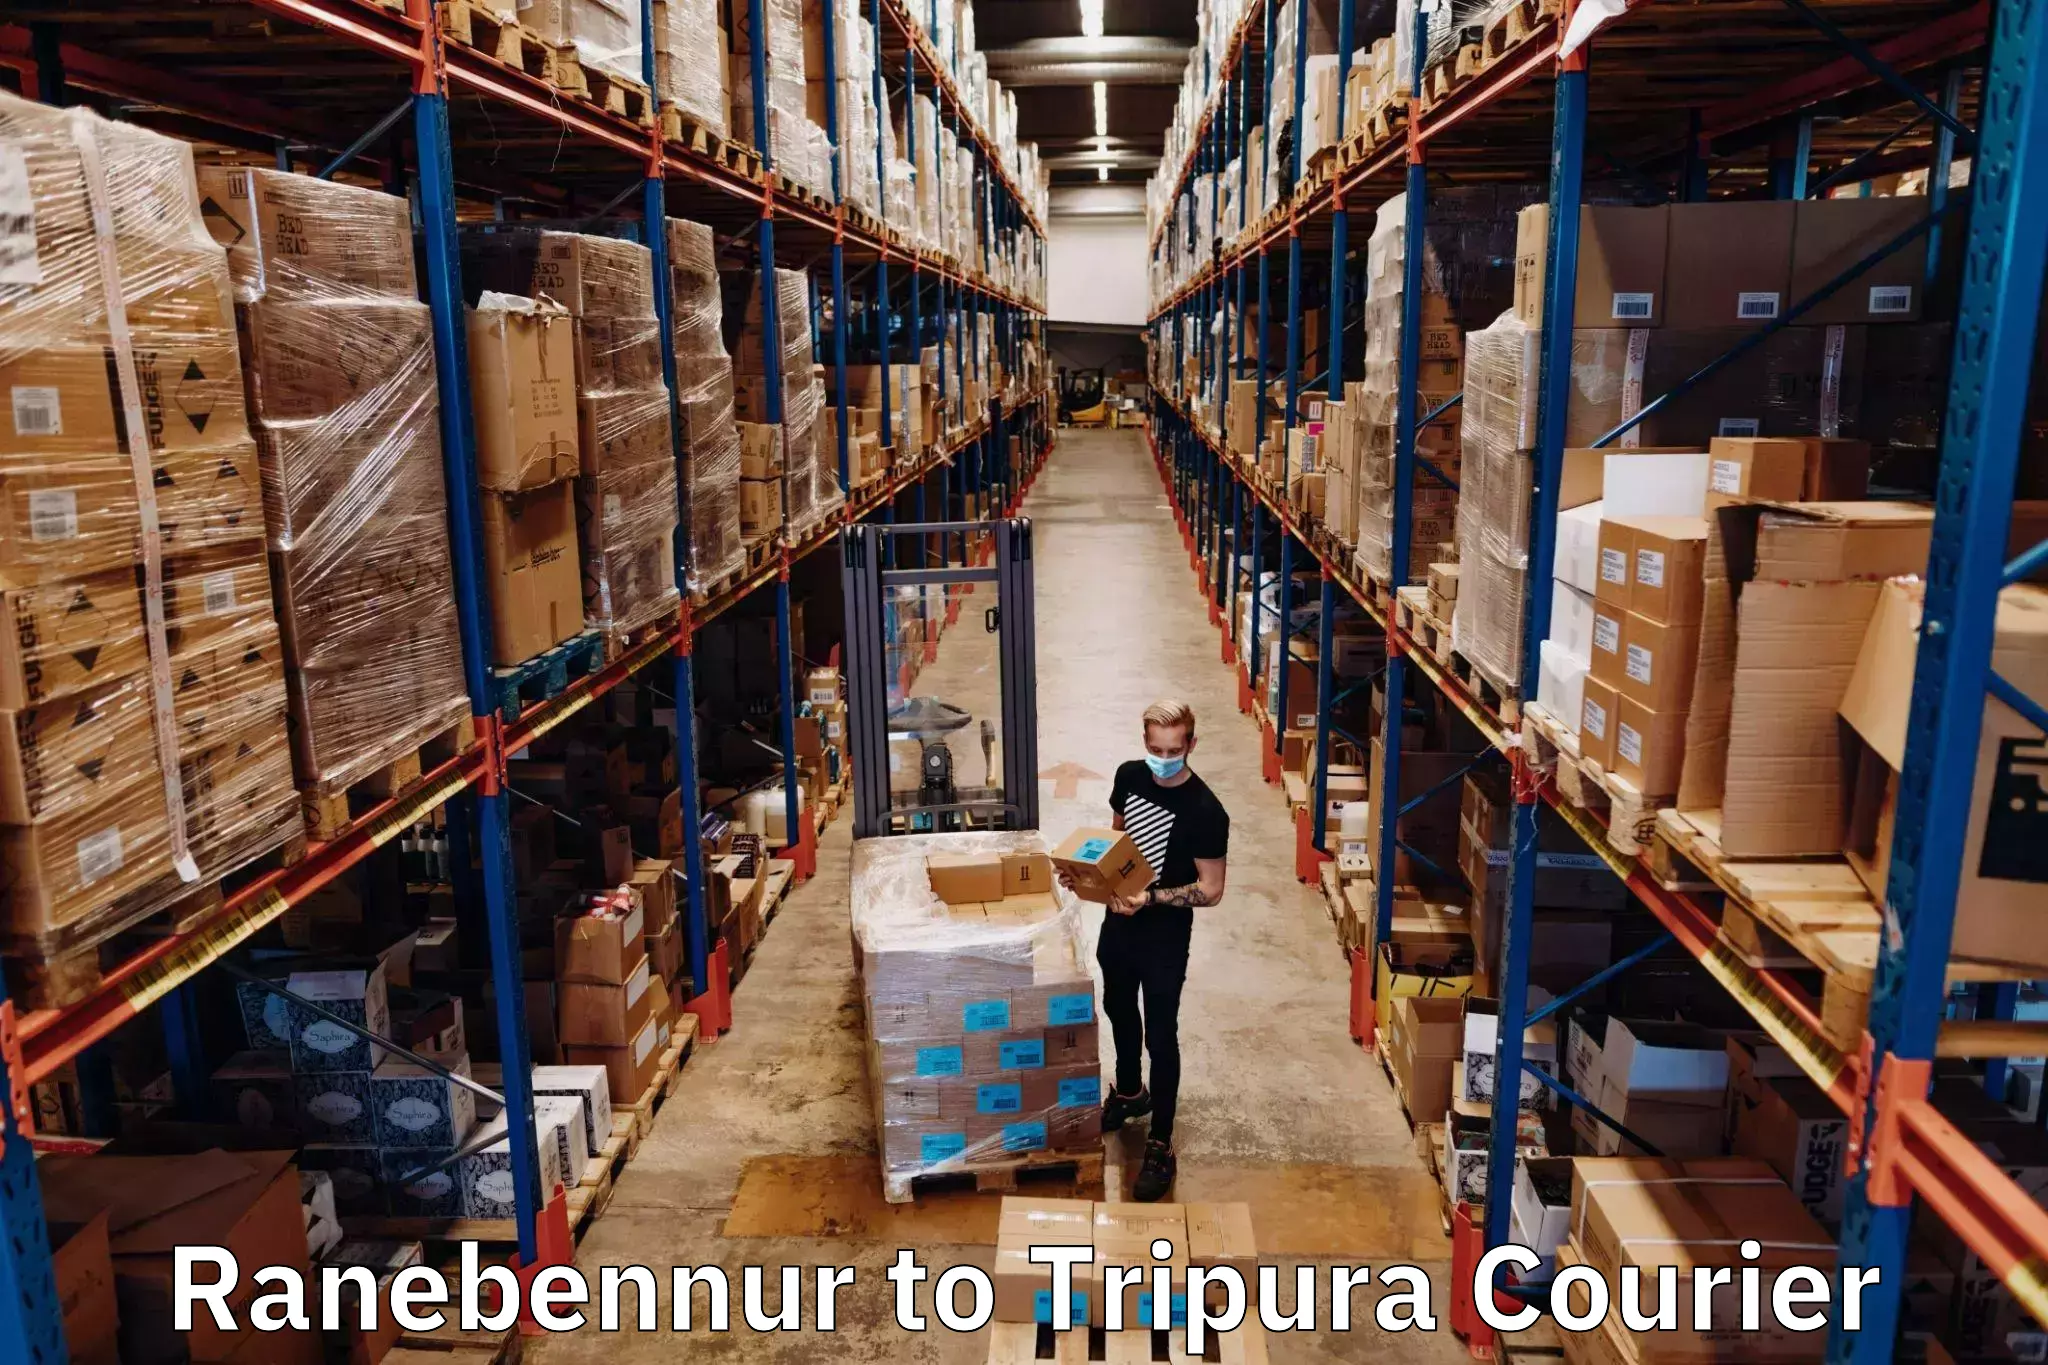 Courier service efficiency Ranebennur to Udaipur Tripura